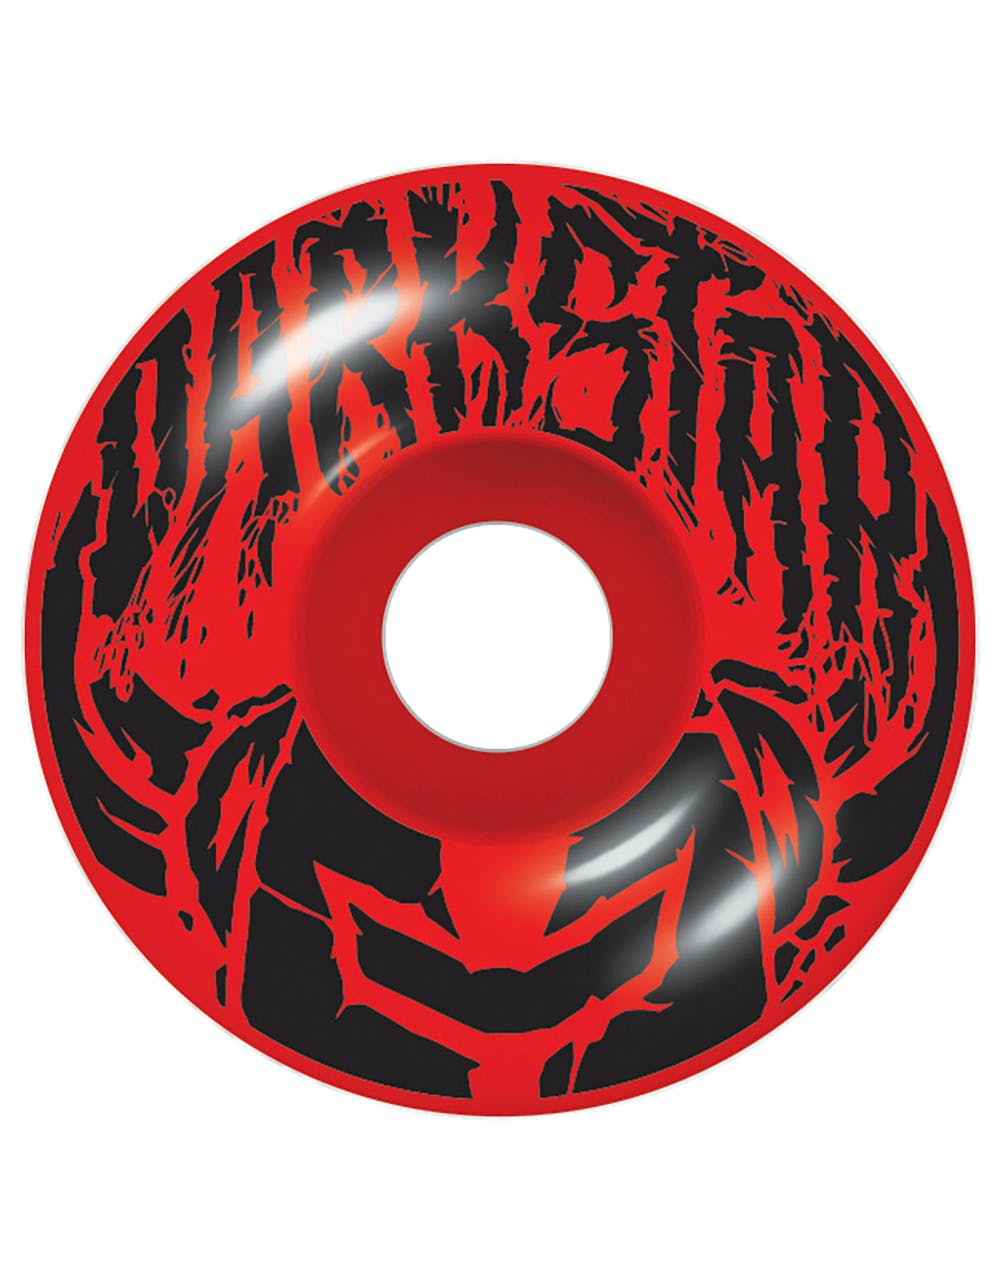 Darkstar Scrim 'Soft Wheels' Complete Skateboard - 7.5"